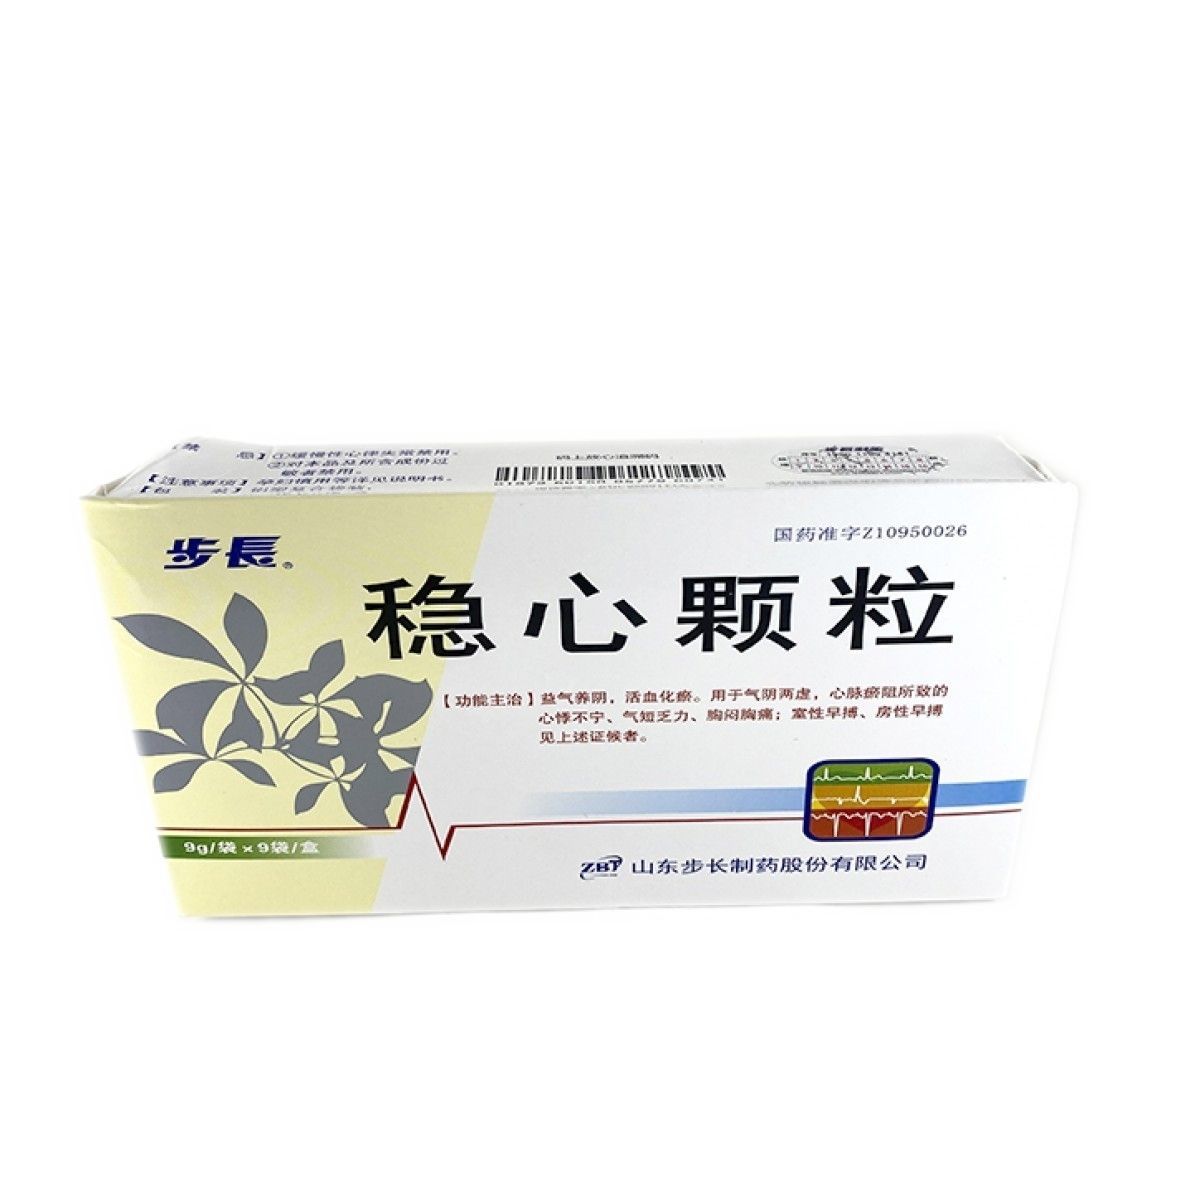 Гранулы "Вэньсинь" (Wenxin Keli) для лечения аритмии